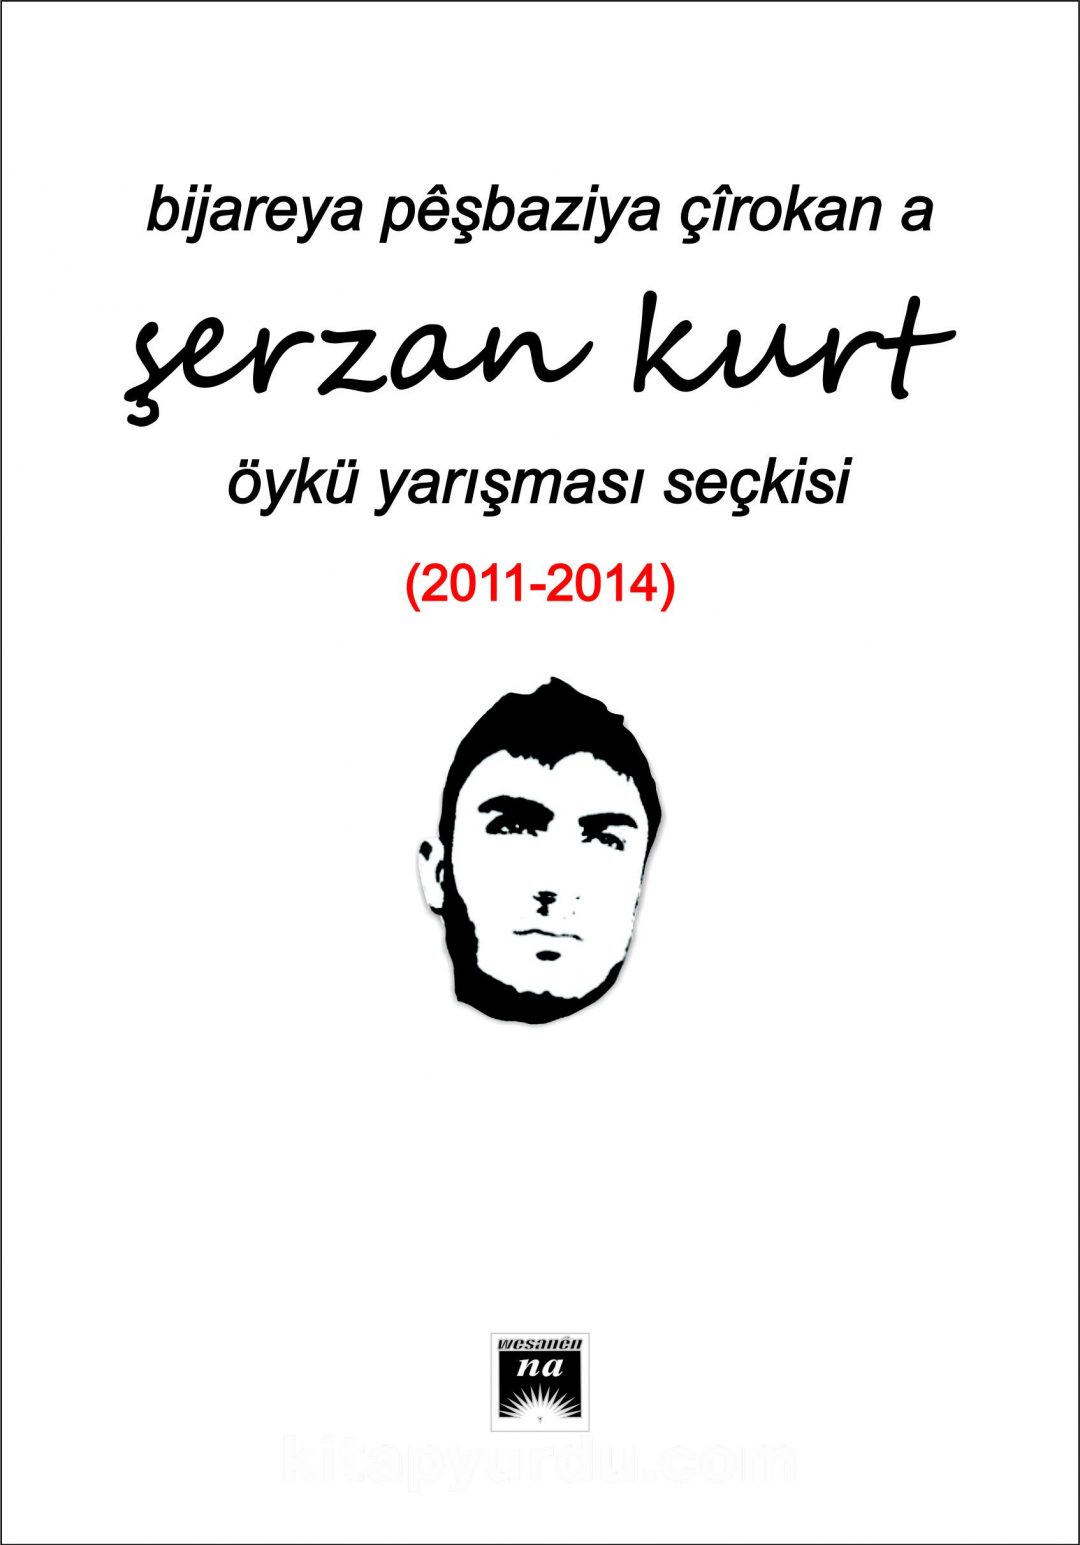 Bıjareya Peşbazıya Çirokan A Şerzan Kurt Öykü Yarışması Seçkisi (2011-2014)